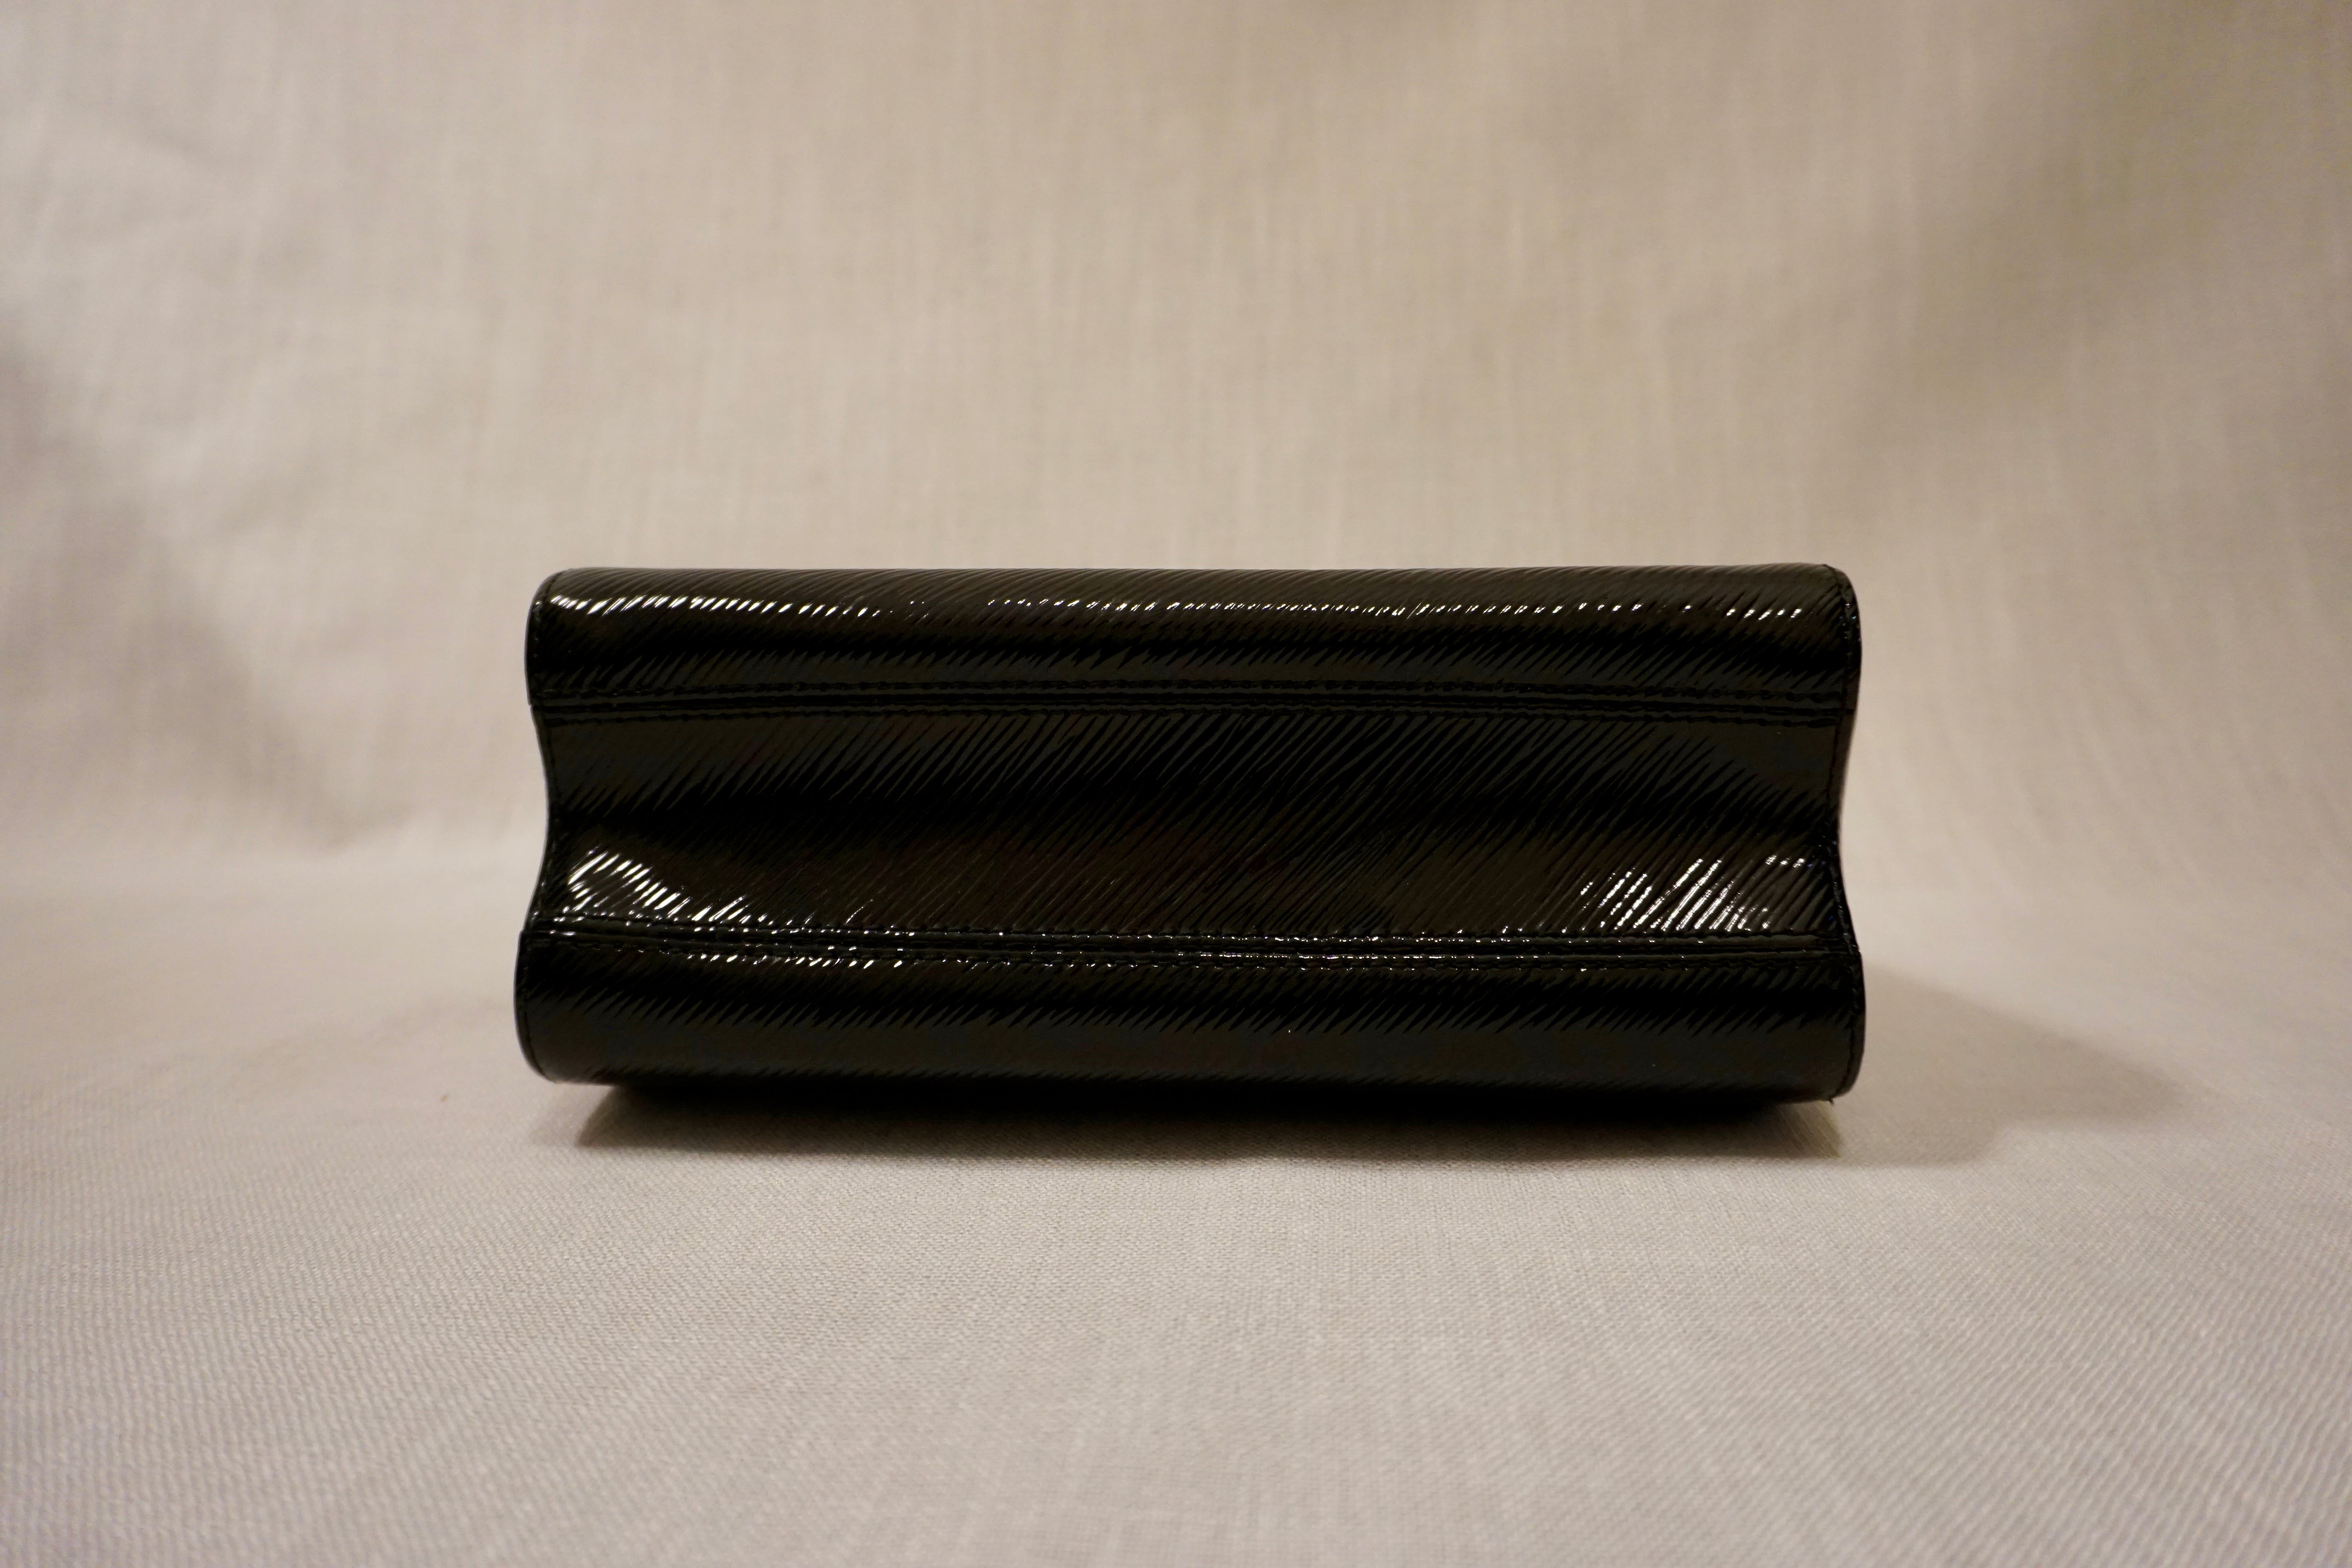 Louis Vuitton Epi Leather Twist MM Bag Black